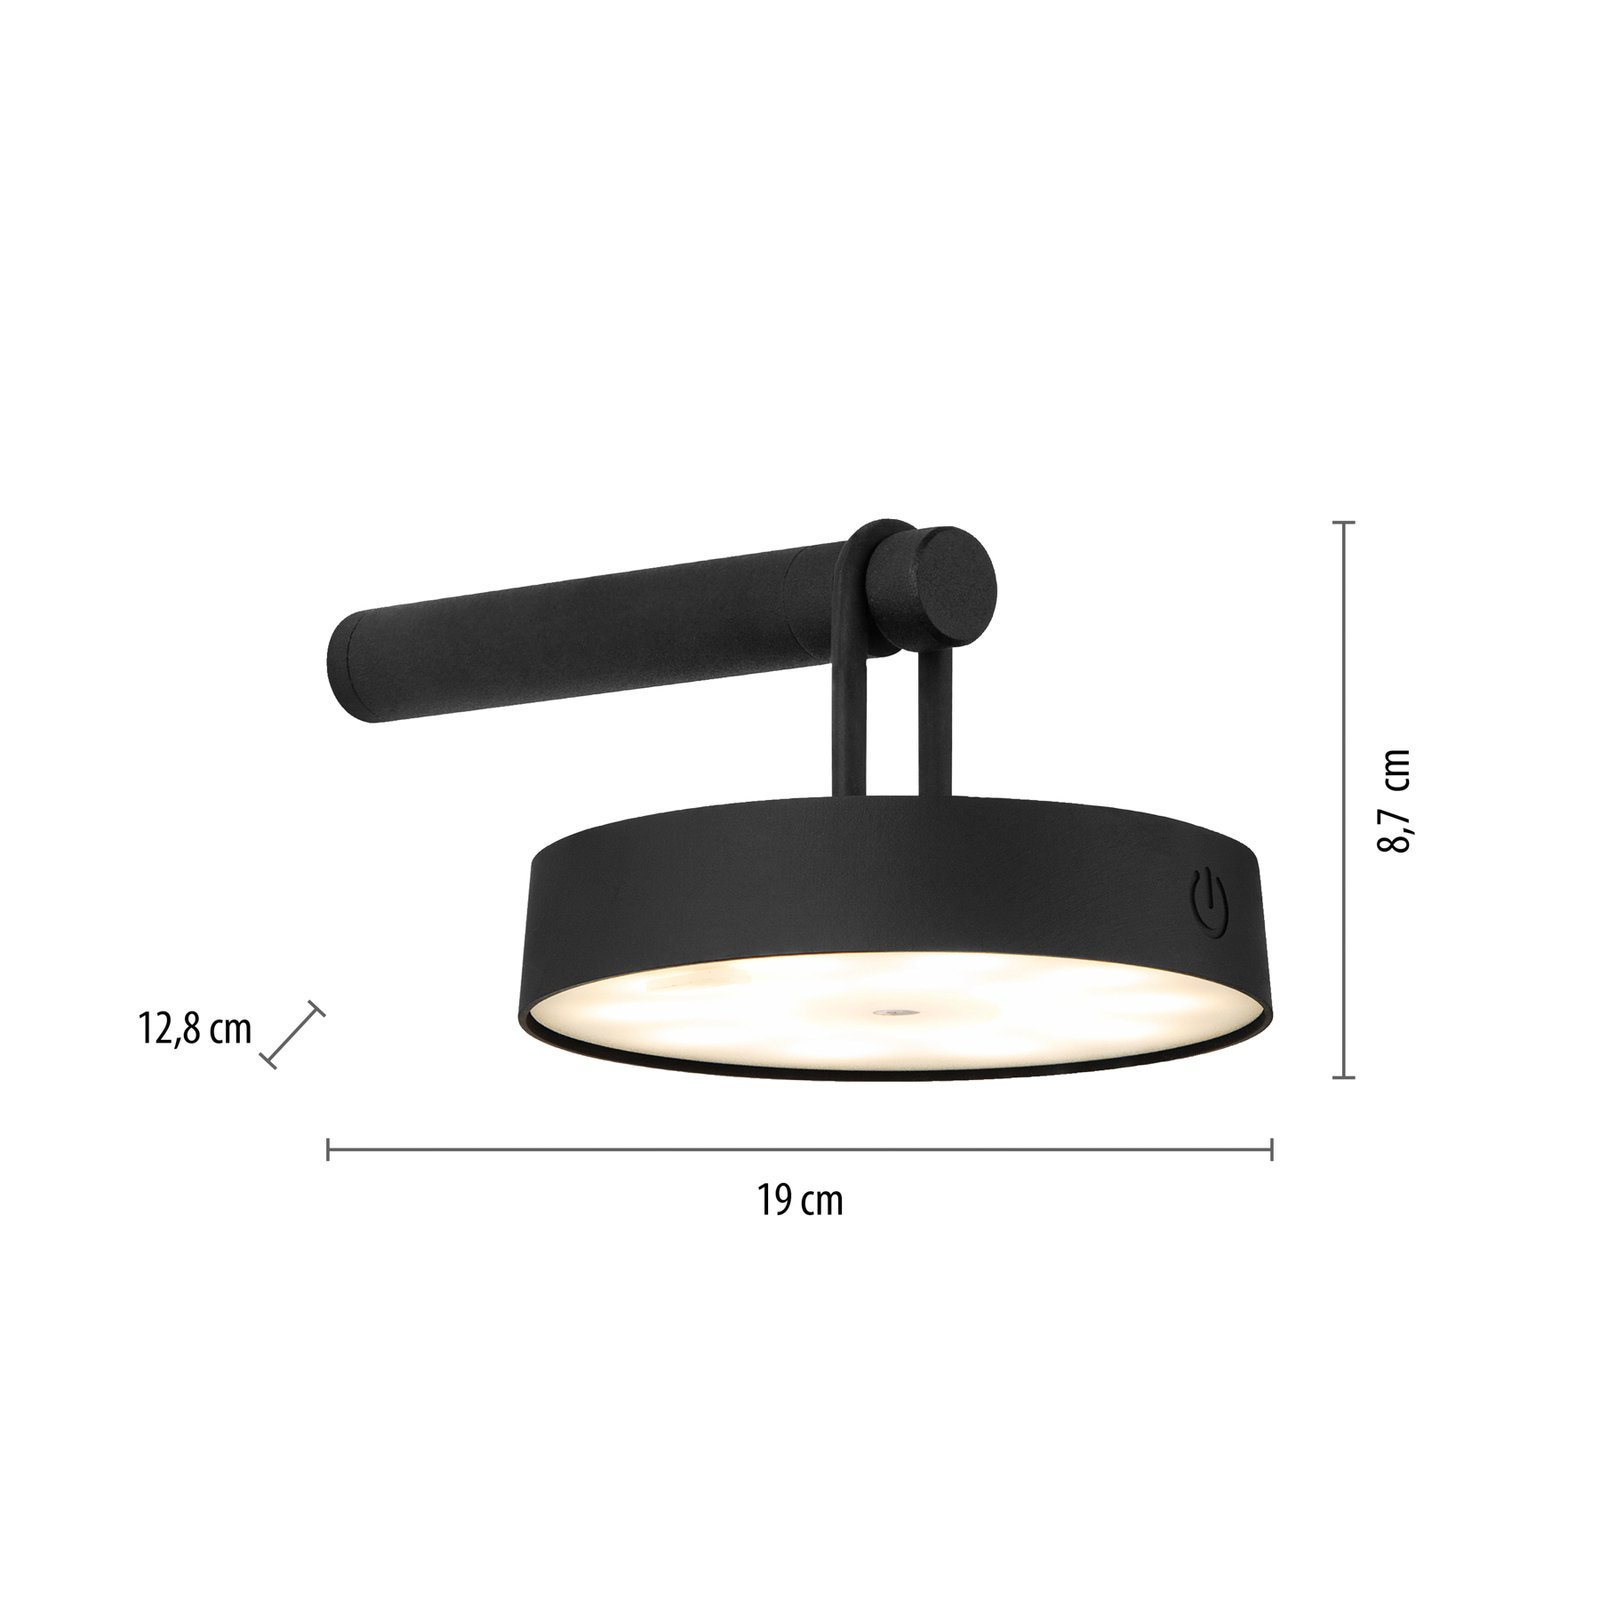 JUST LIGHT. LED wall lamp Arma, black plastic IP44